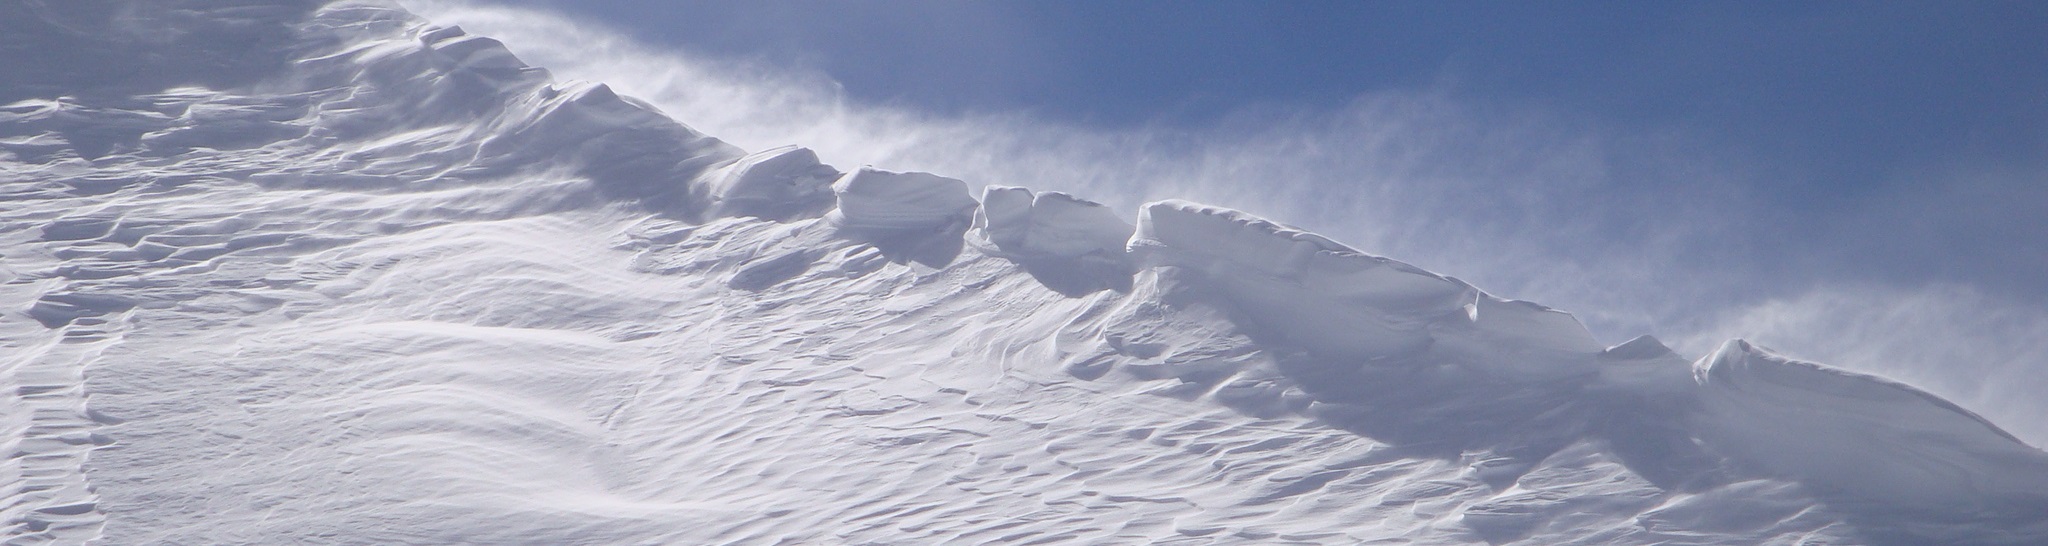 Alpes du Nord : Nouvelles projections climatiques de l’enneigement à moyenne altitude